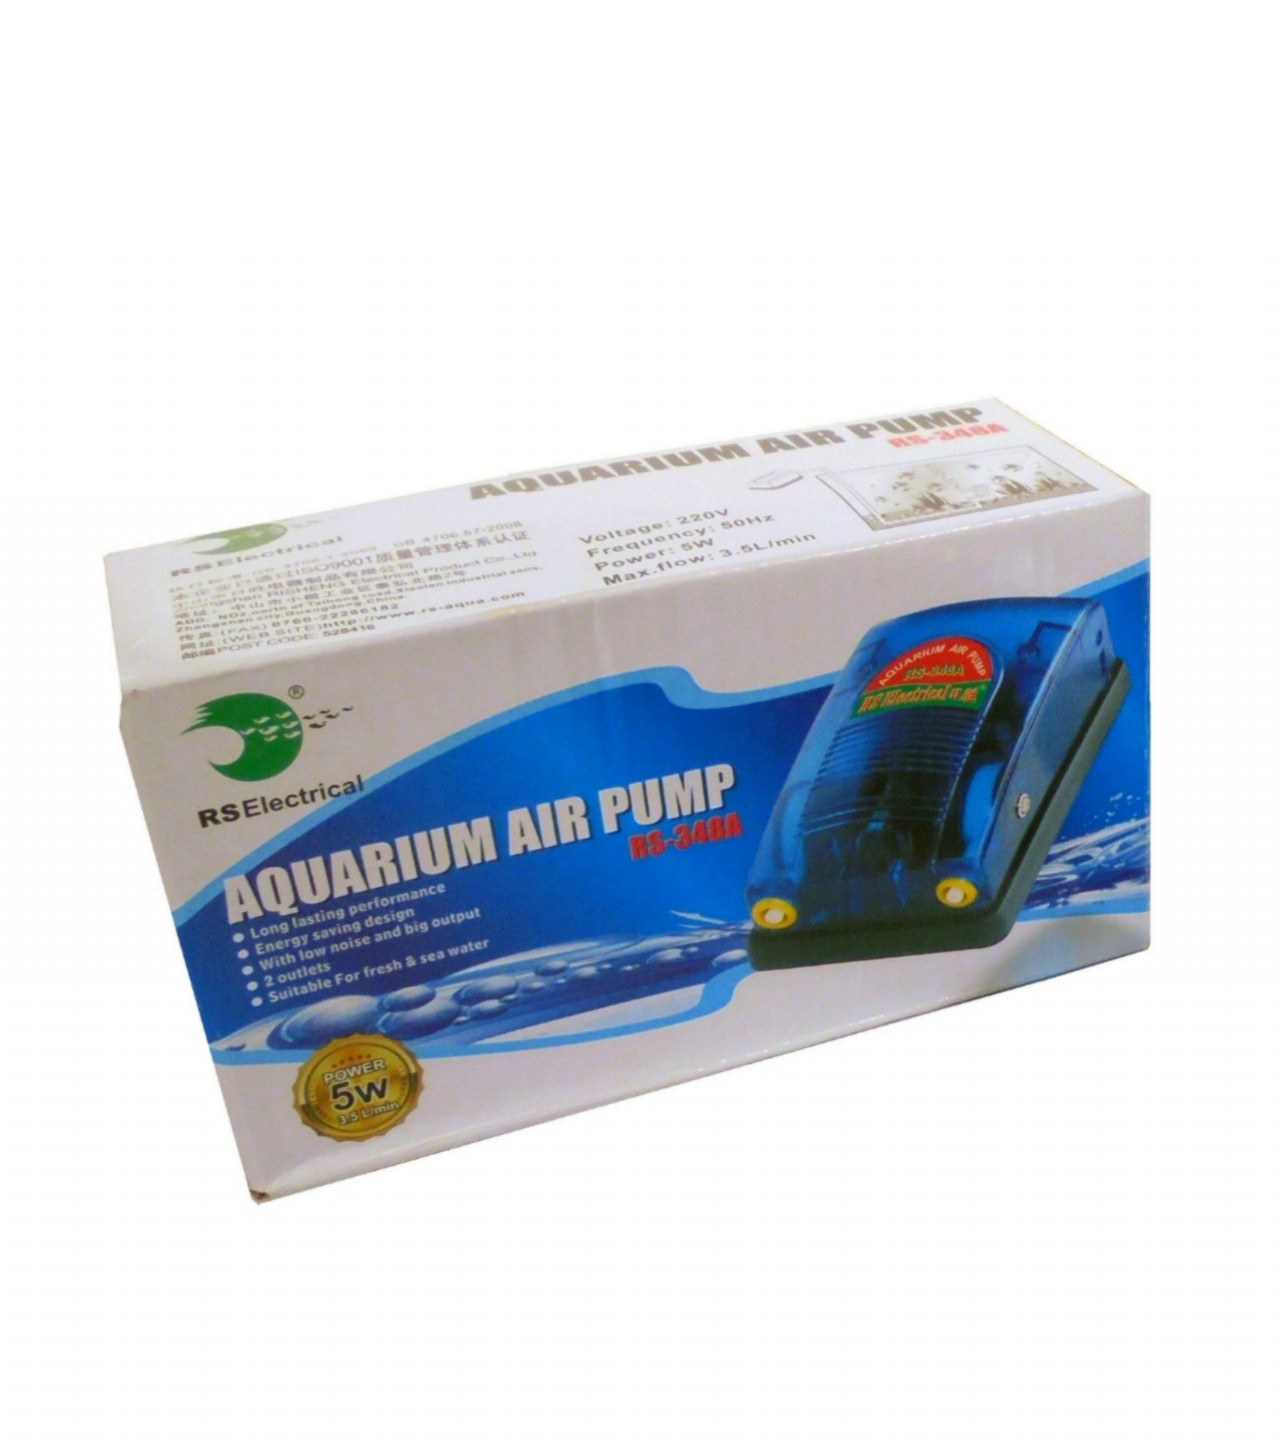 Aquarium Air Pump (Rs-348a) (Power-5w) Rs Electrical Super Transparent - Double Outlet Nozzle